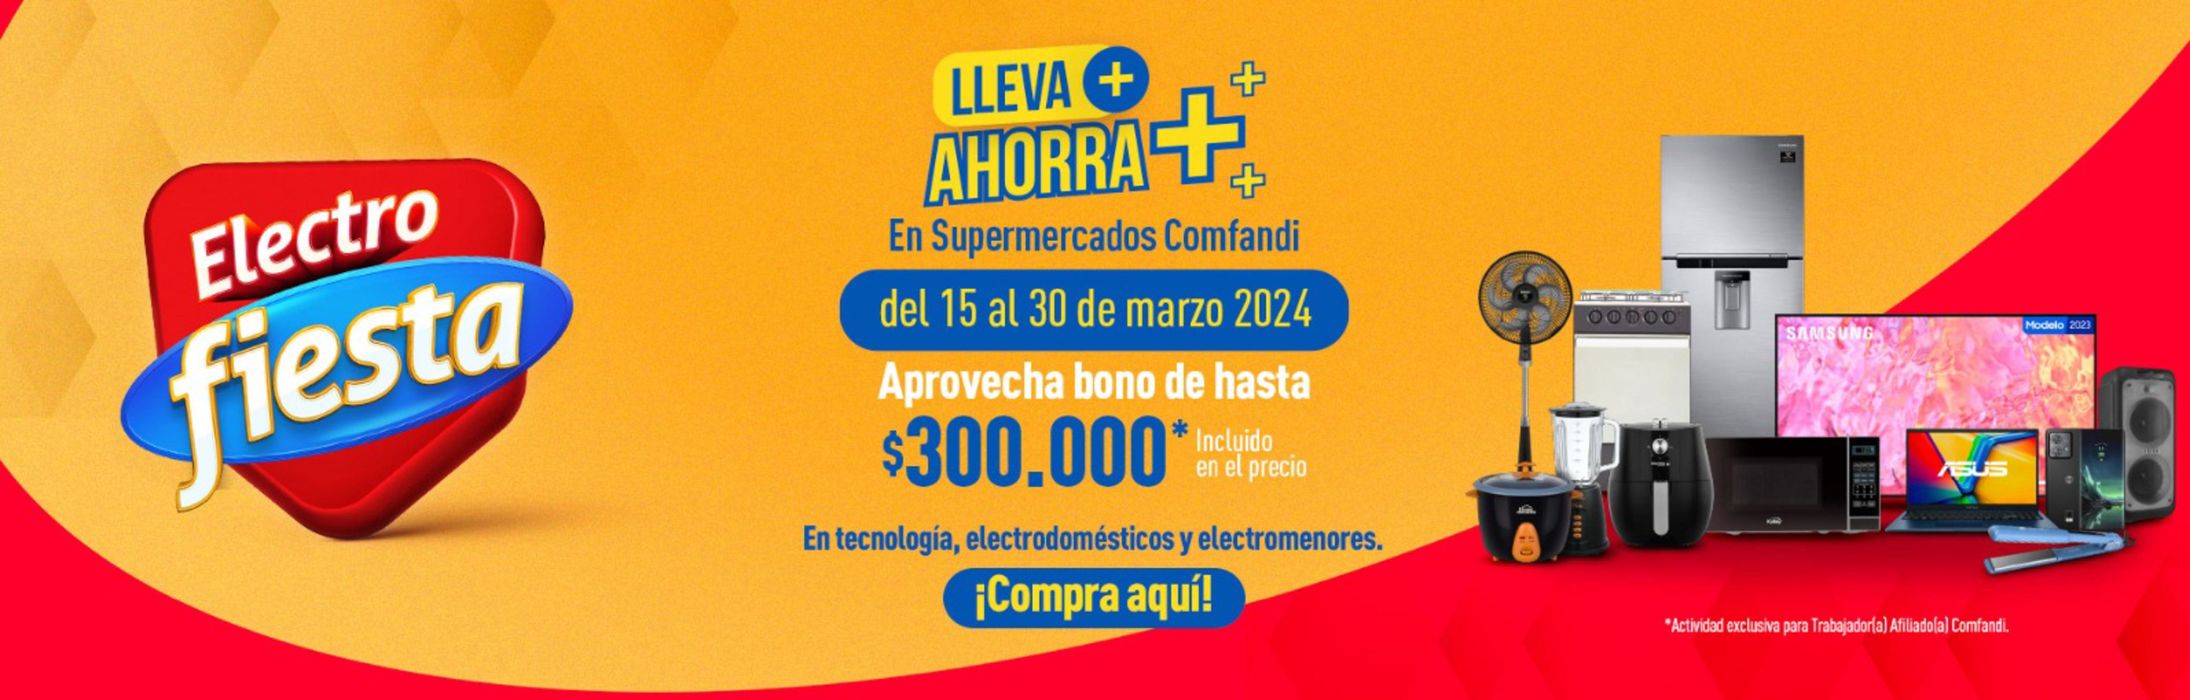 Catálogo Comfandi en Jamundí | Lleva ahorro electro fiesta | 27/3/2024 - 30/3/2024